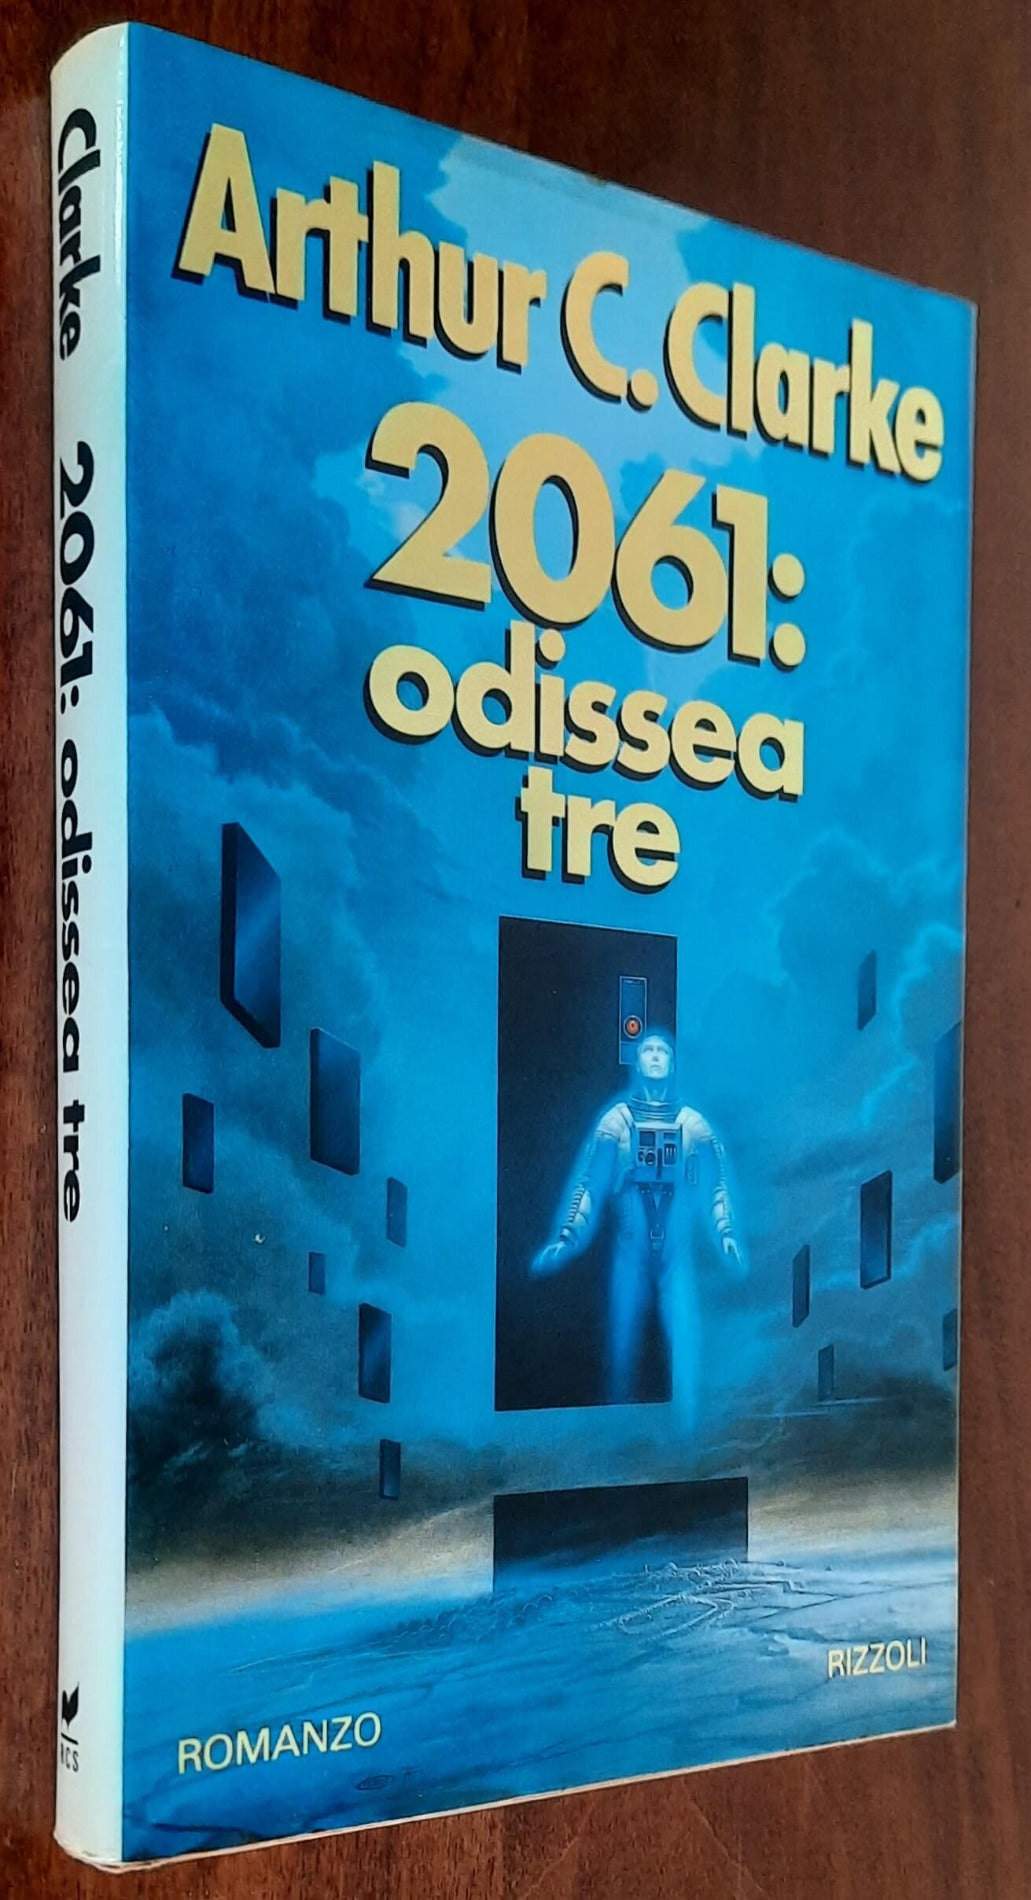 2061: odissea tre - di Arthur C. Clarke - Rizzoli